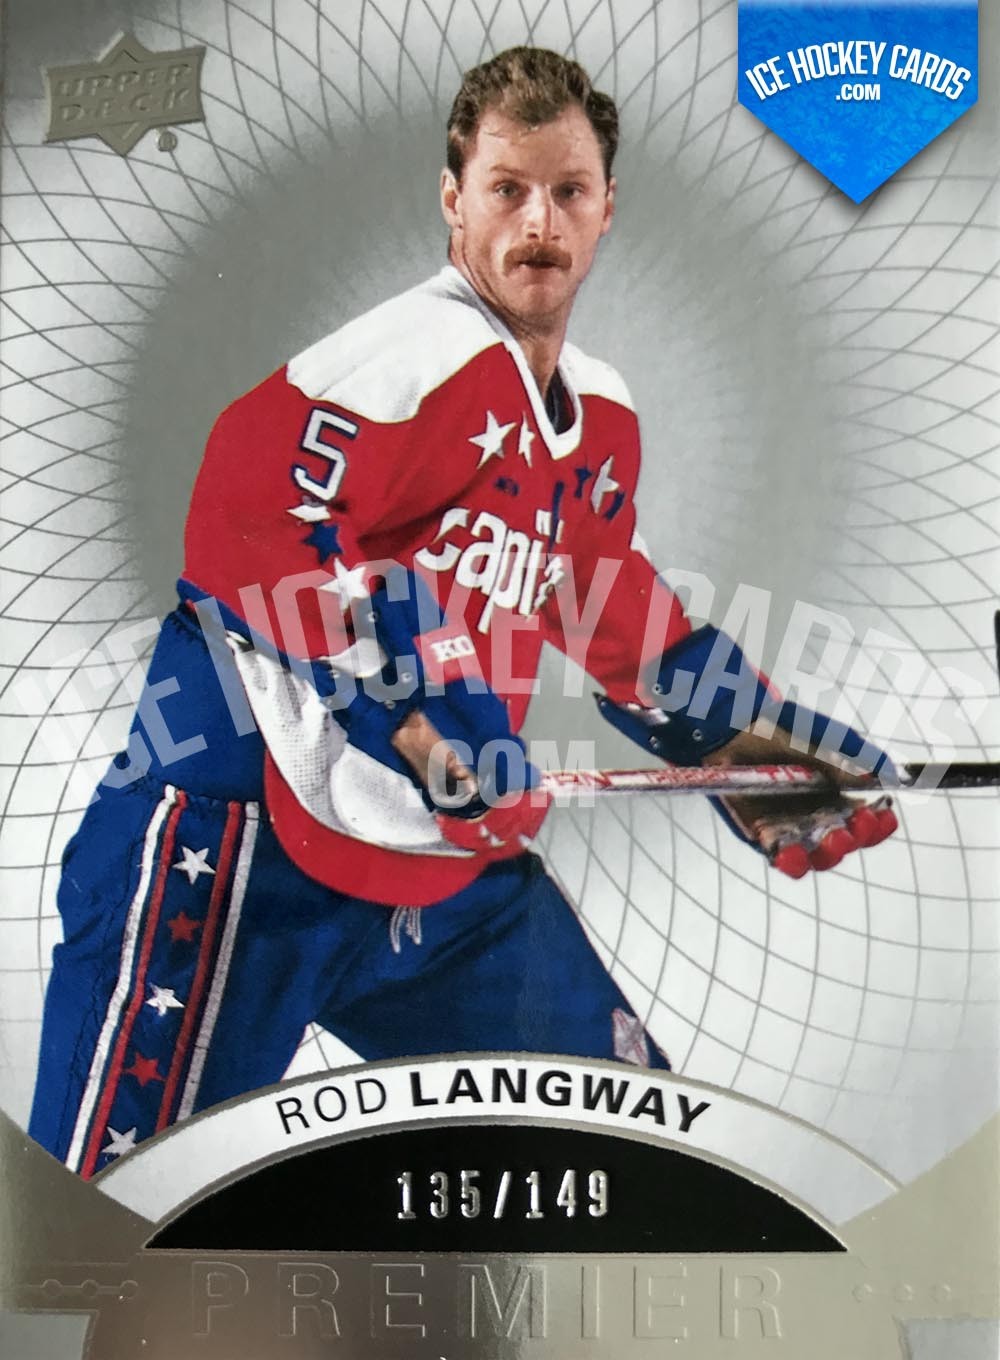 Upper Deck - Premier Hockey 2017-18 - Rod Langway Premier Legend Base Card